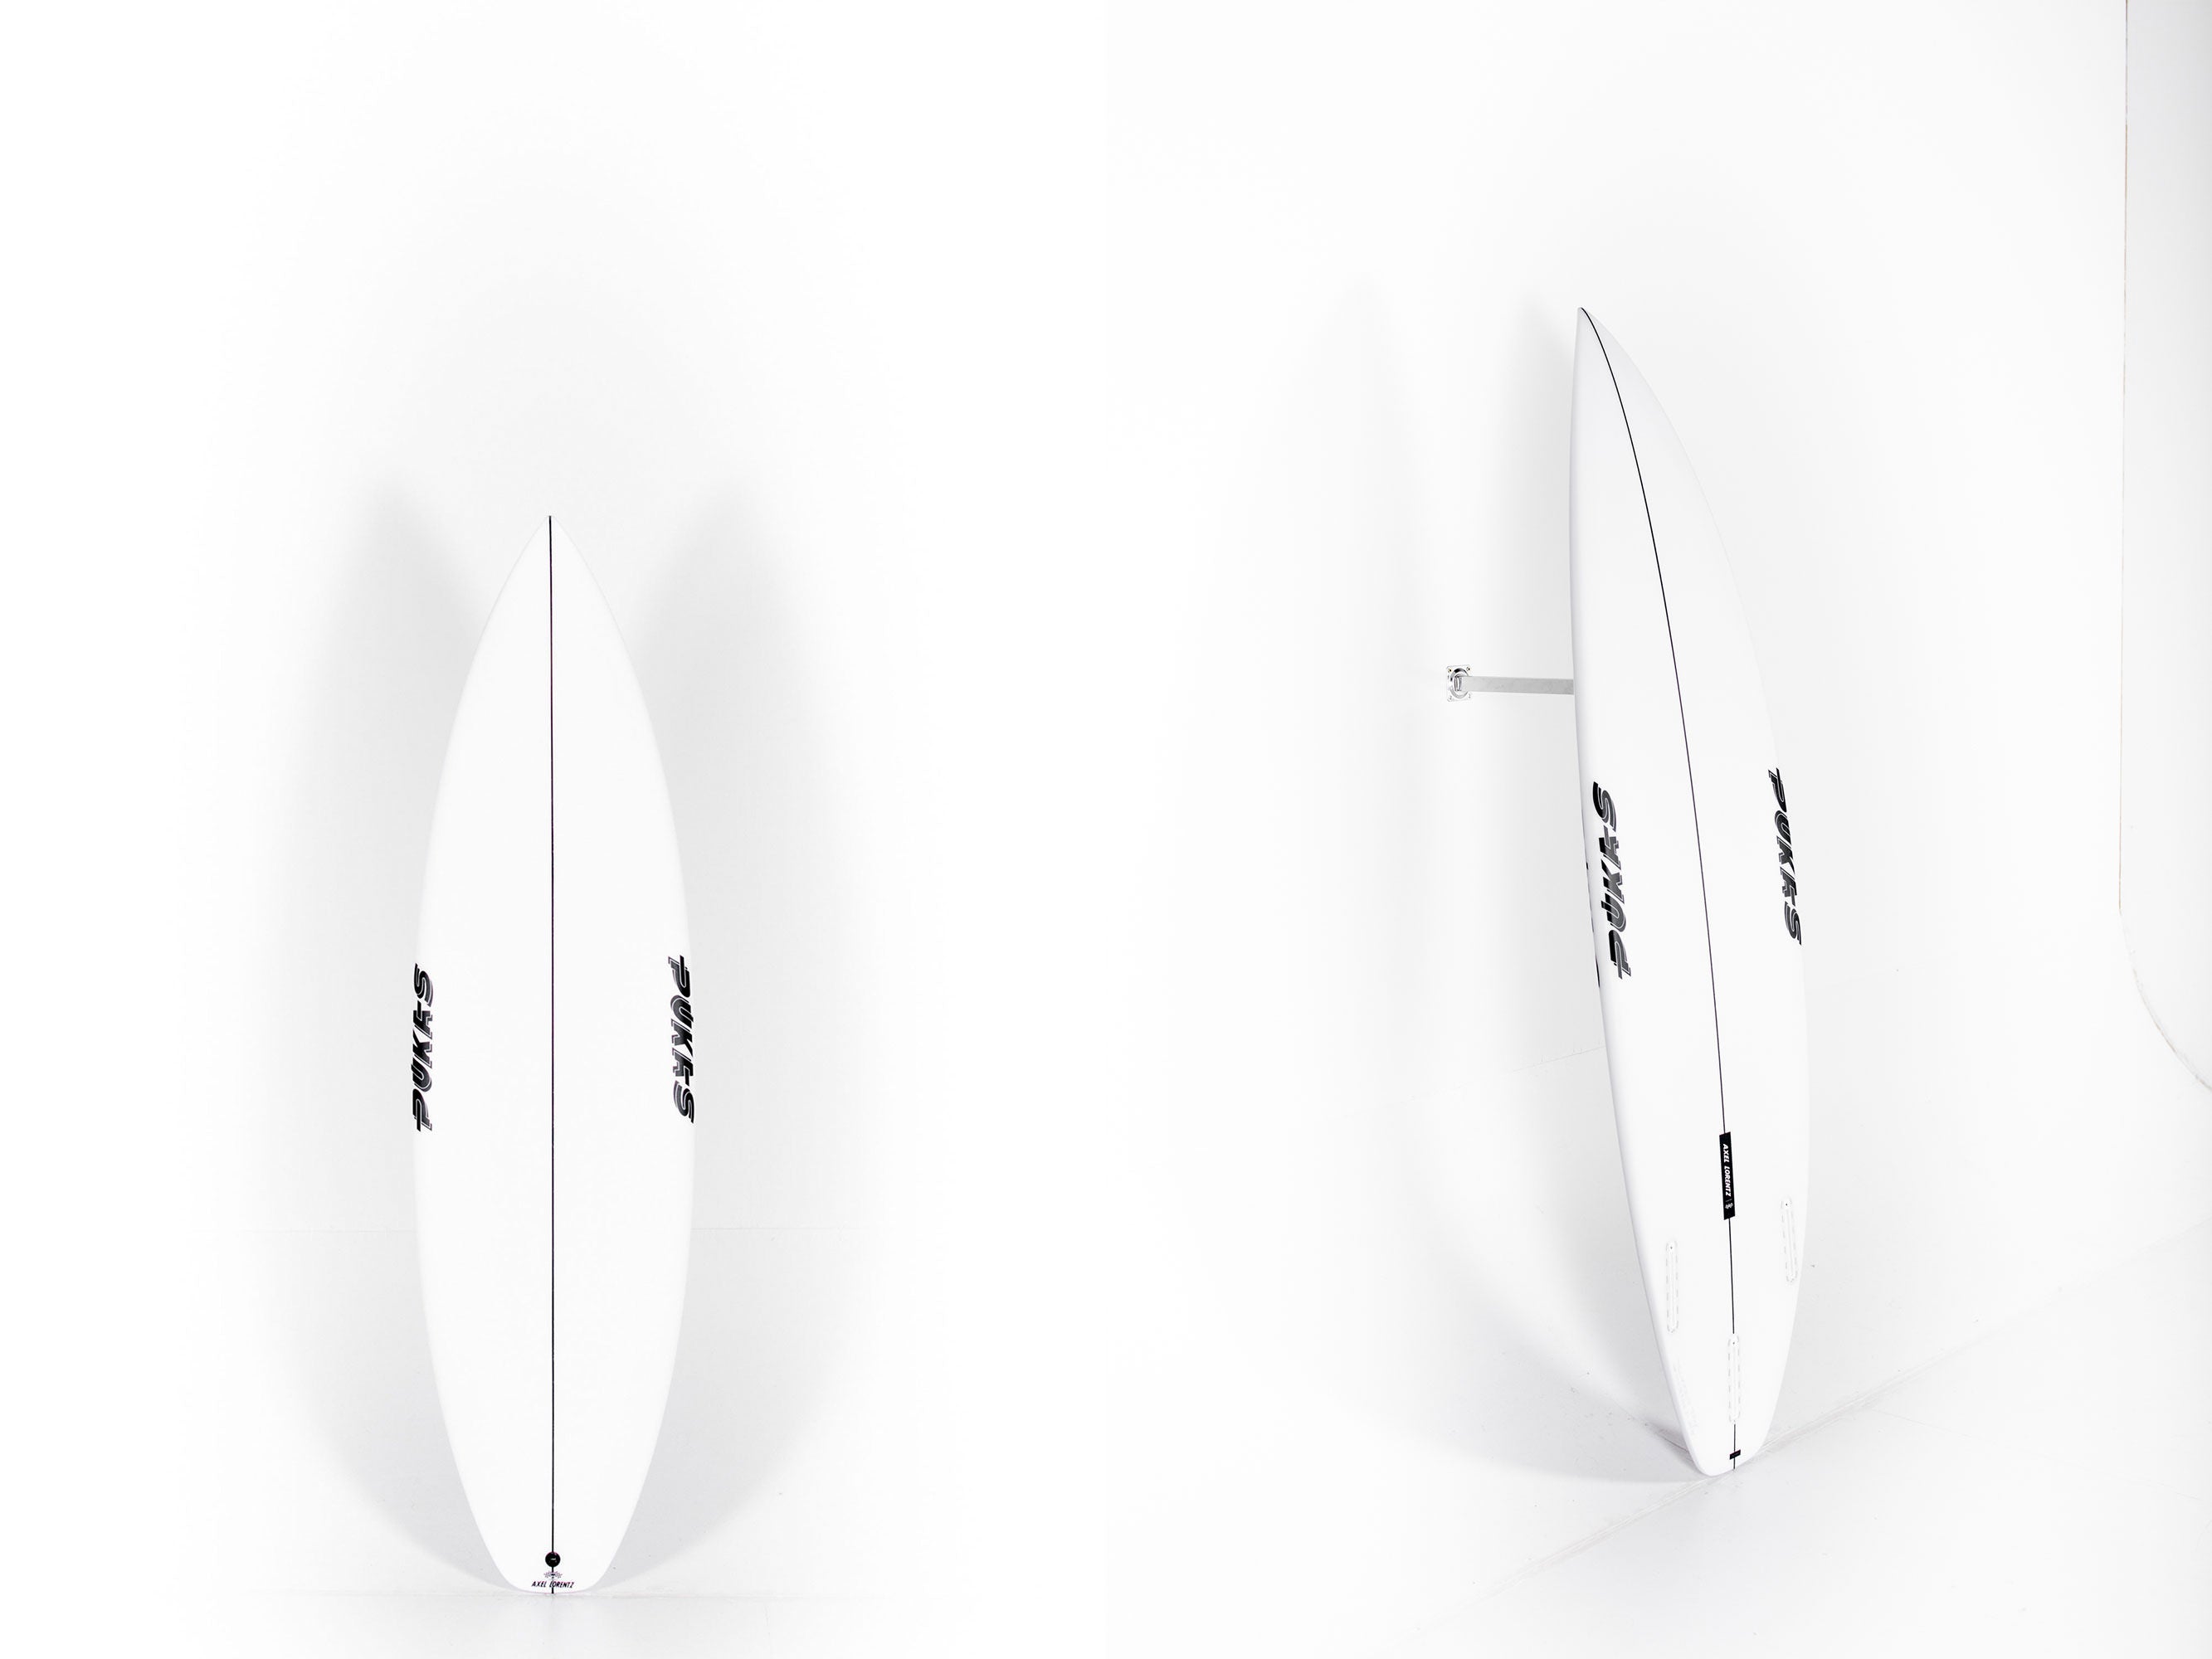 Pukas Surfboard - DARKER by Axel Lorentz - 6'2" x 19,75 x 2,44 x 31,6L. - AX07160